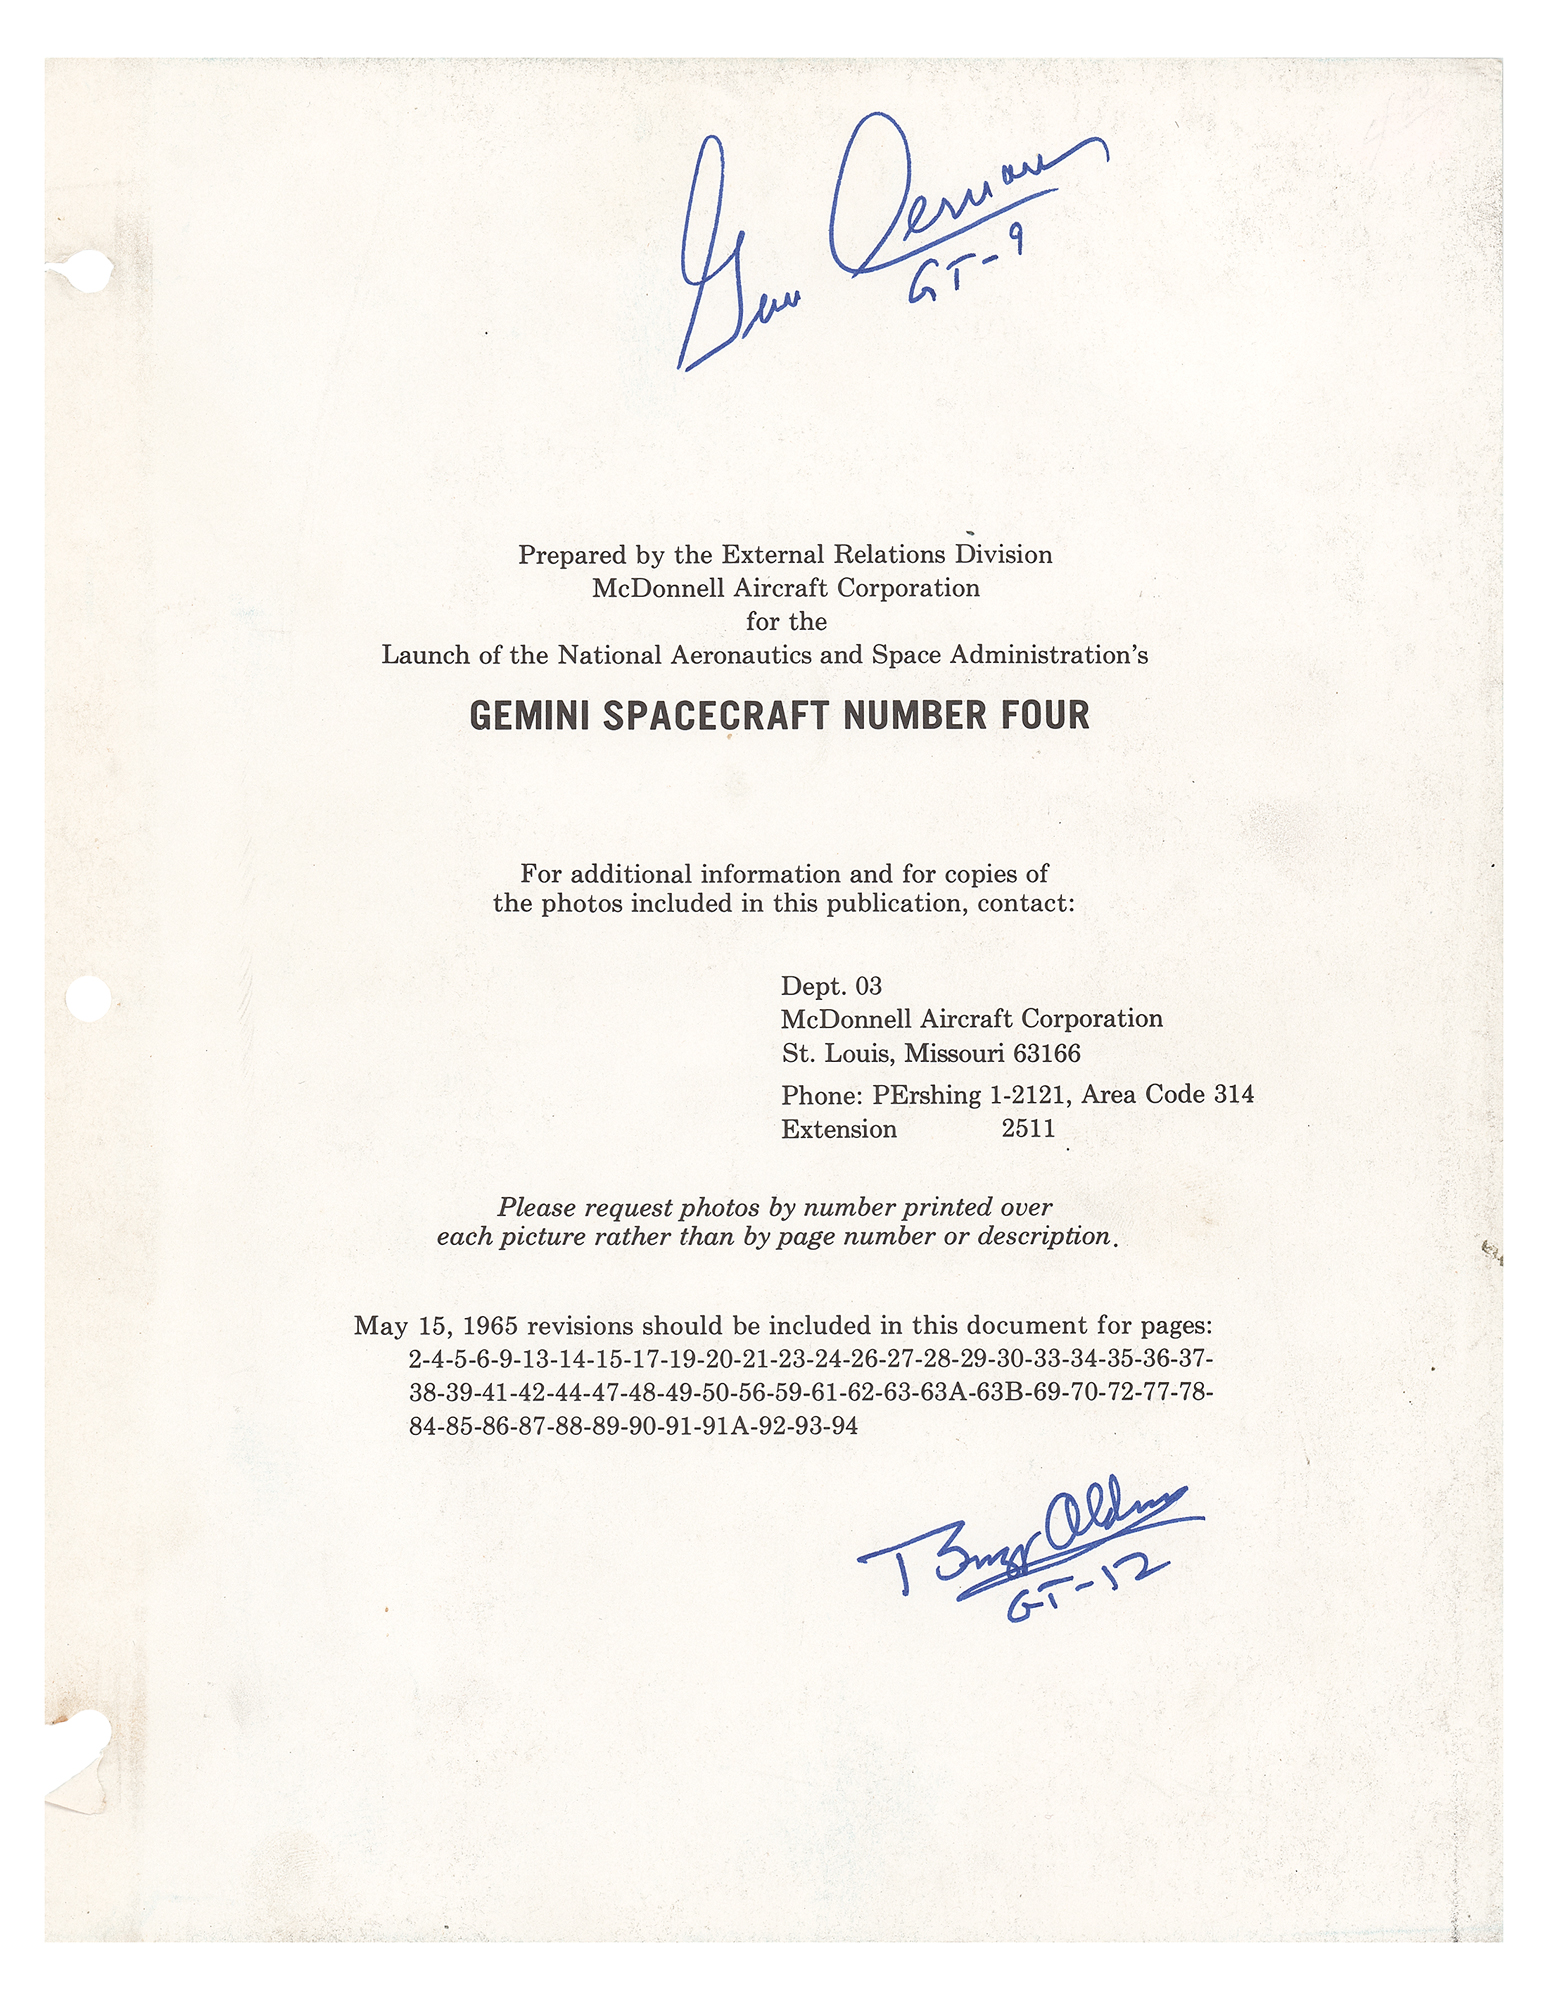 gemini 4 spacecraft documents